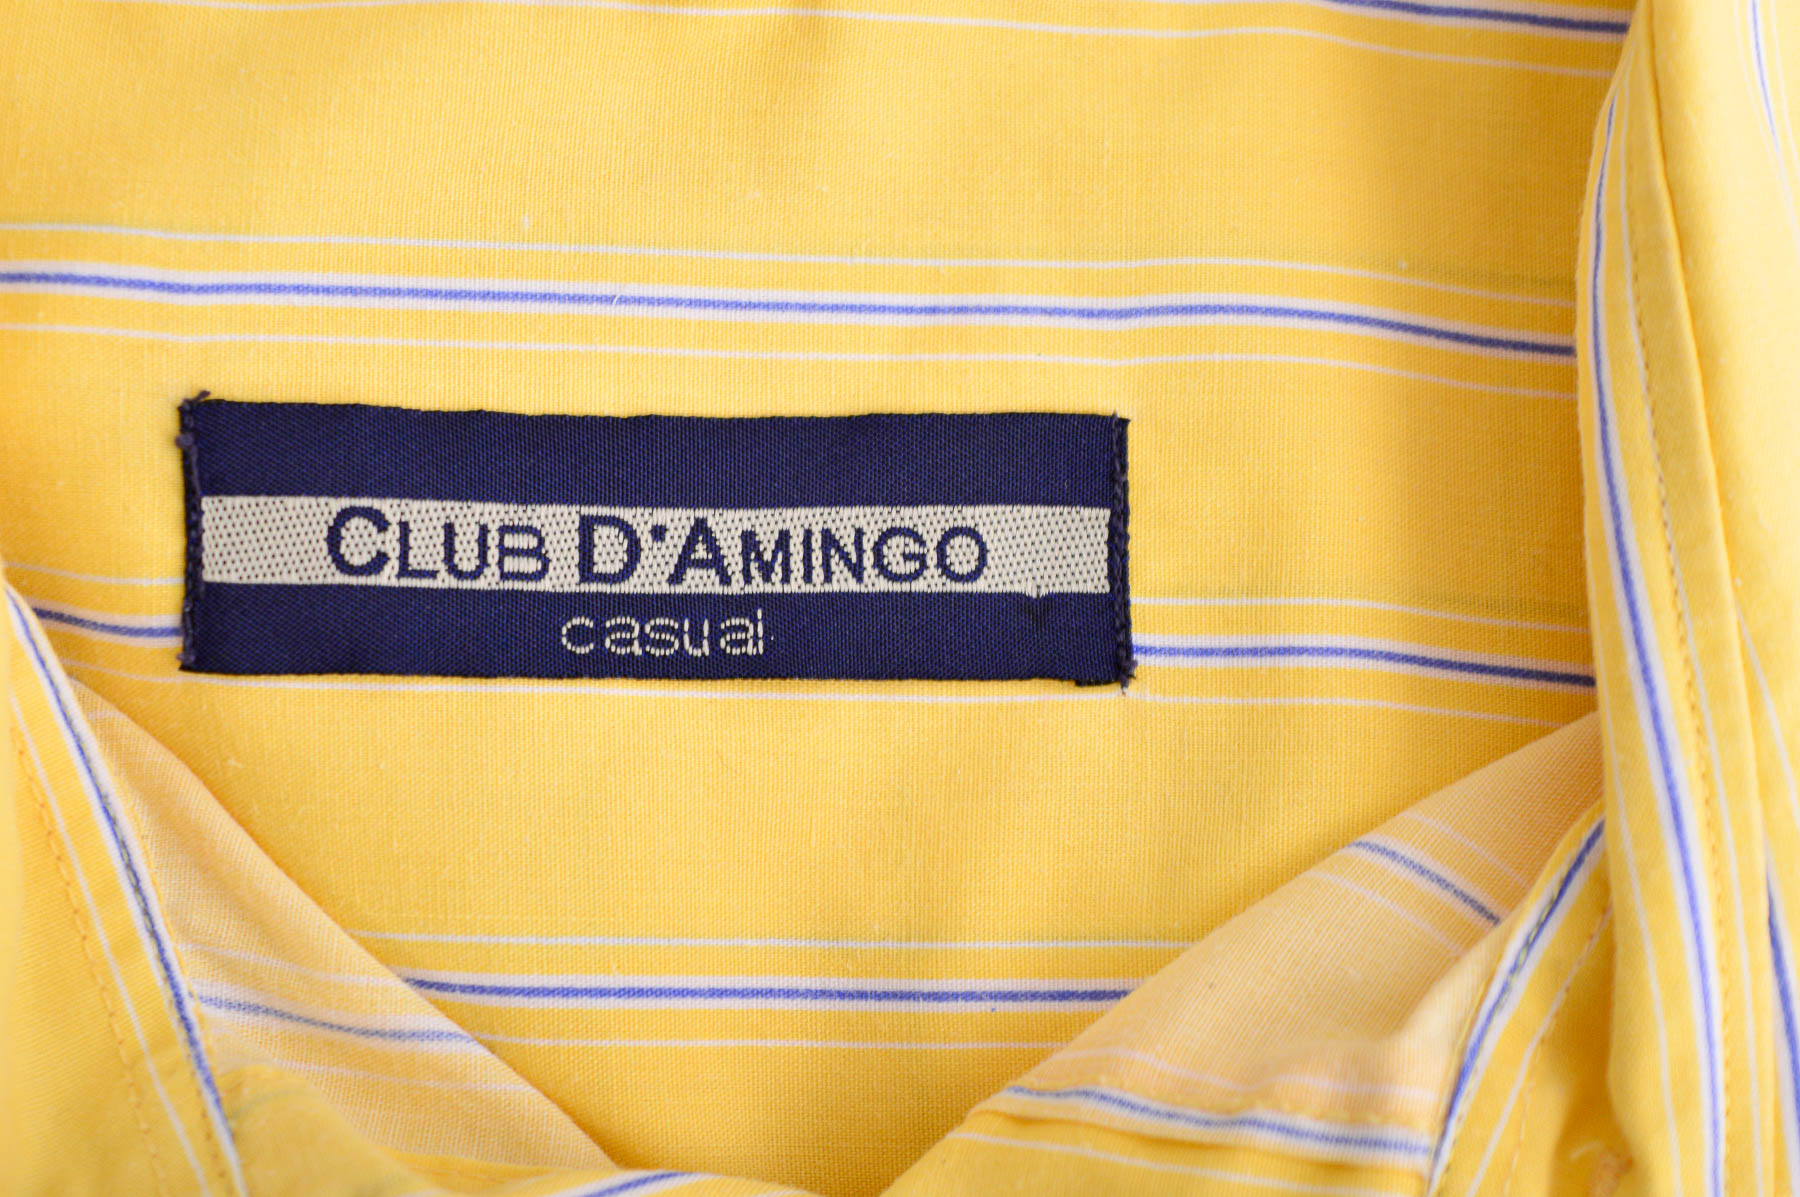 Men's shirt - Club D'amingo - 2